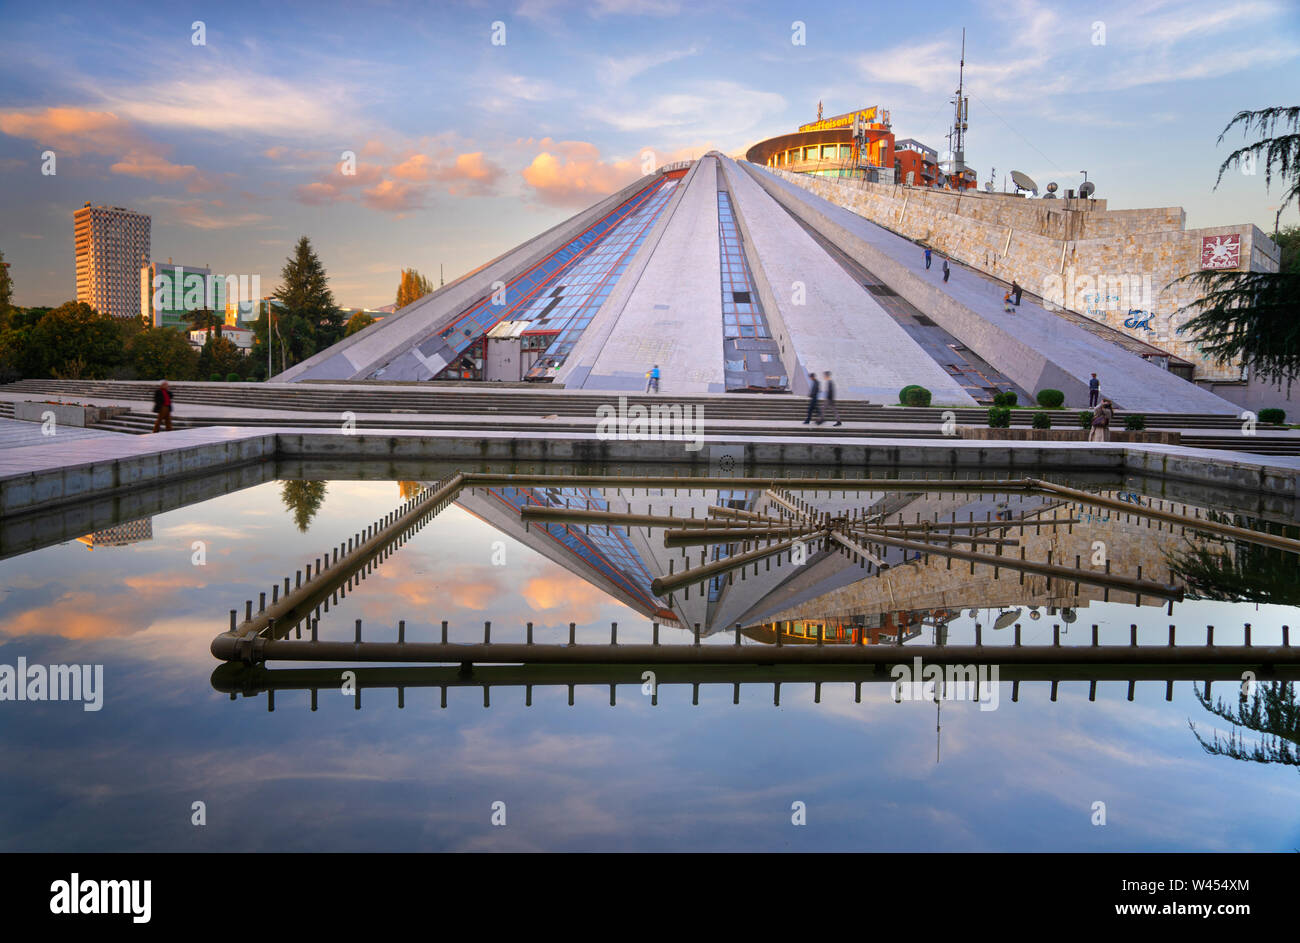 The Uniquely Strange Pyramid of Tirana, Albania Stock Photo